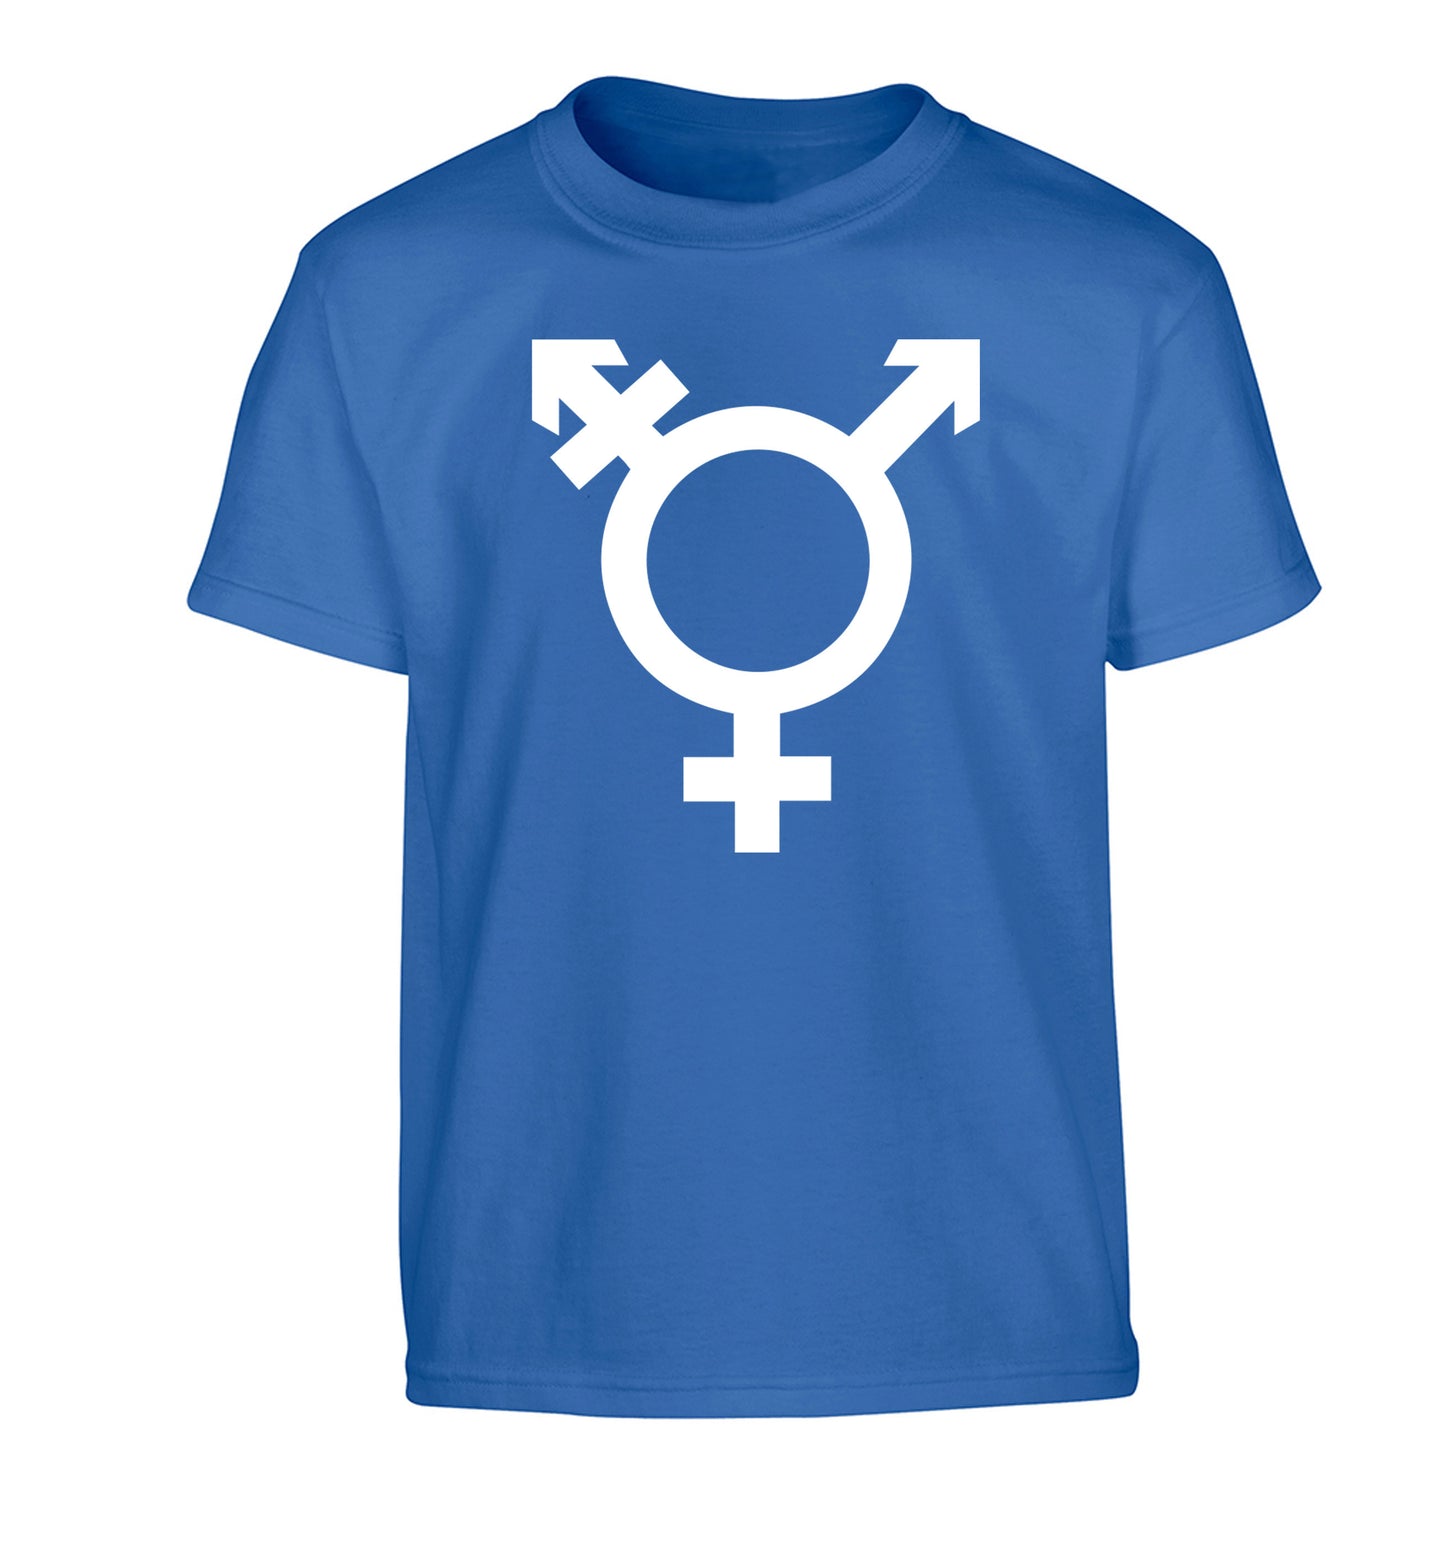 Gender neutral symbol large Children's blue Tshirt 12-14 Years